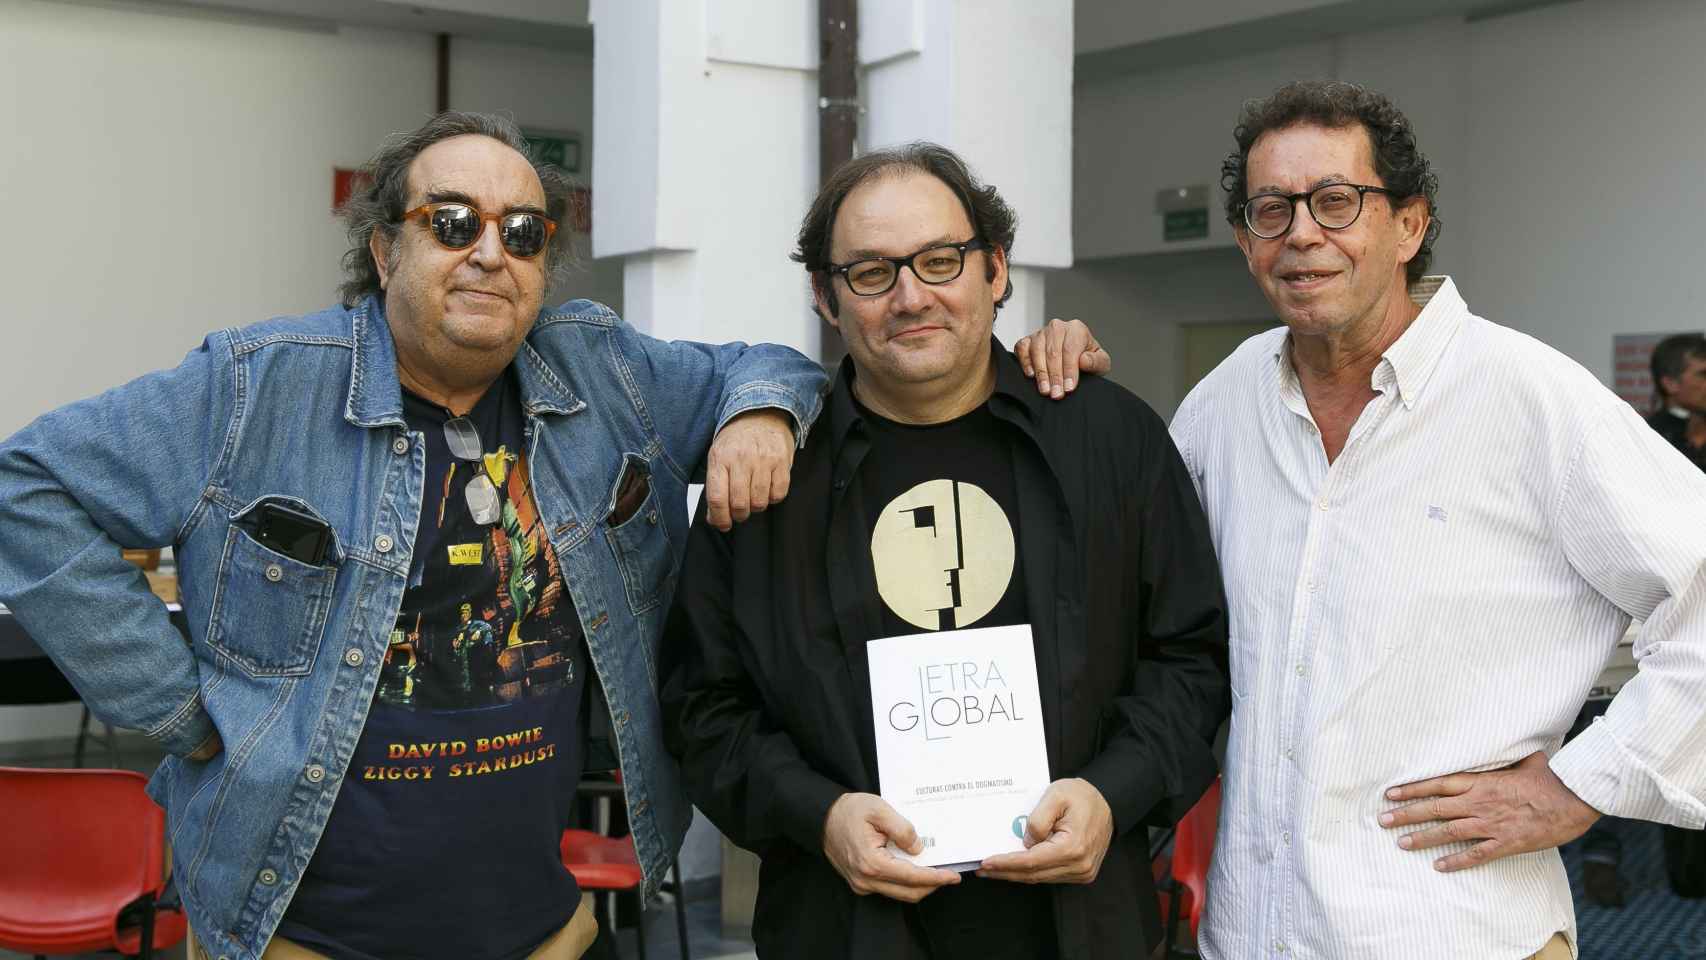 Ramón de España, Carlos Mármol y Diego Carrasco con un ejemplar de 'Letra Global' en el 'Bookstock' de Sevilla. / JAIME MARTÍNEZ